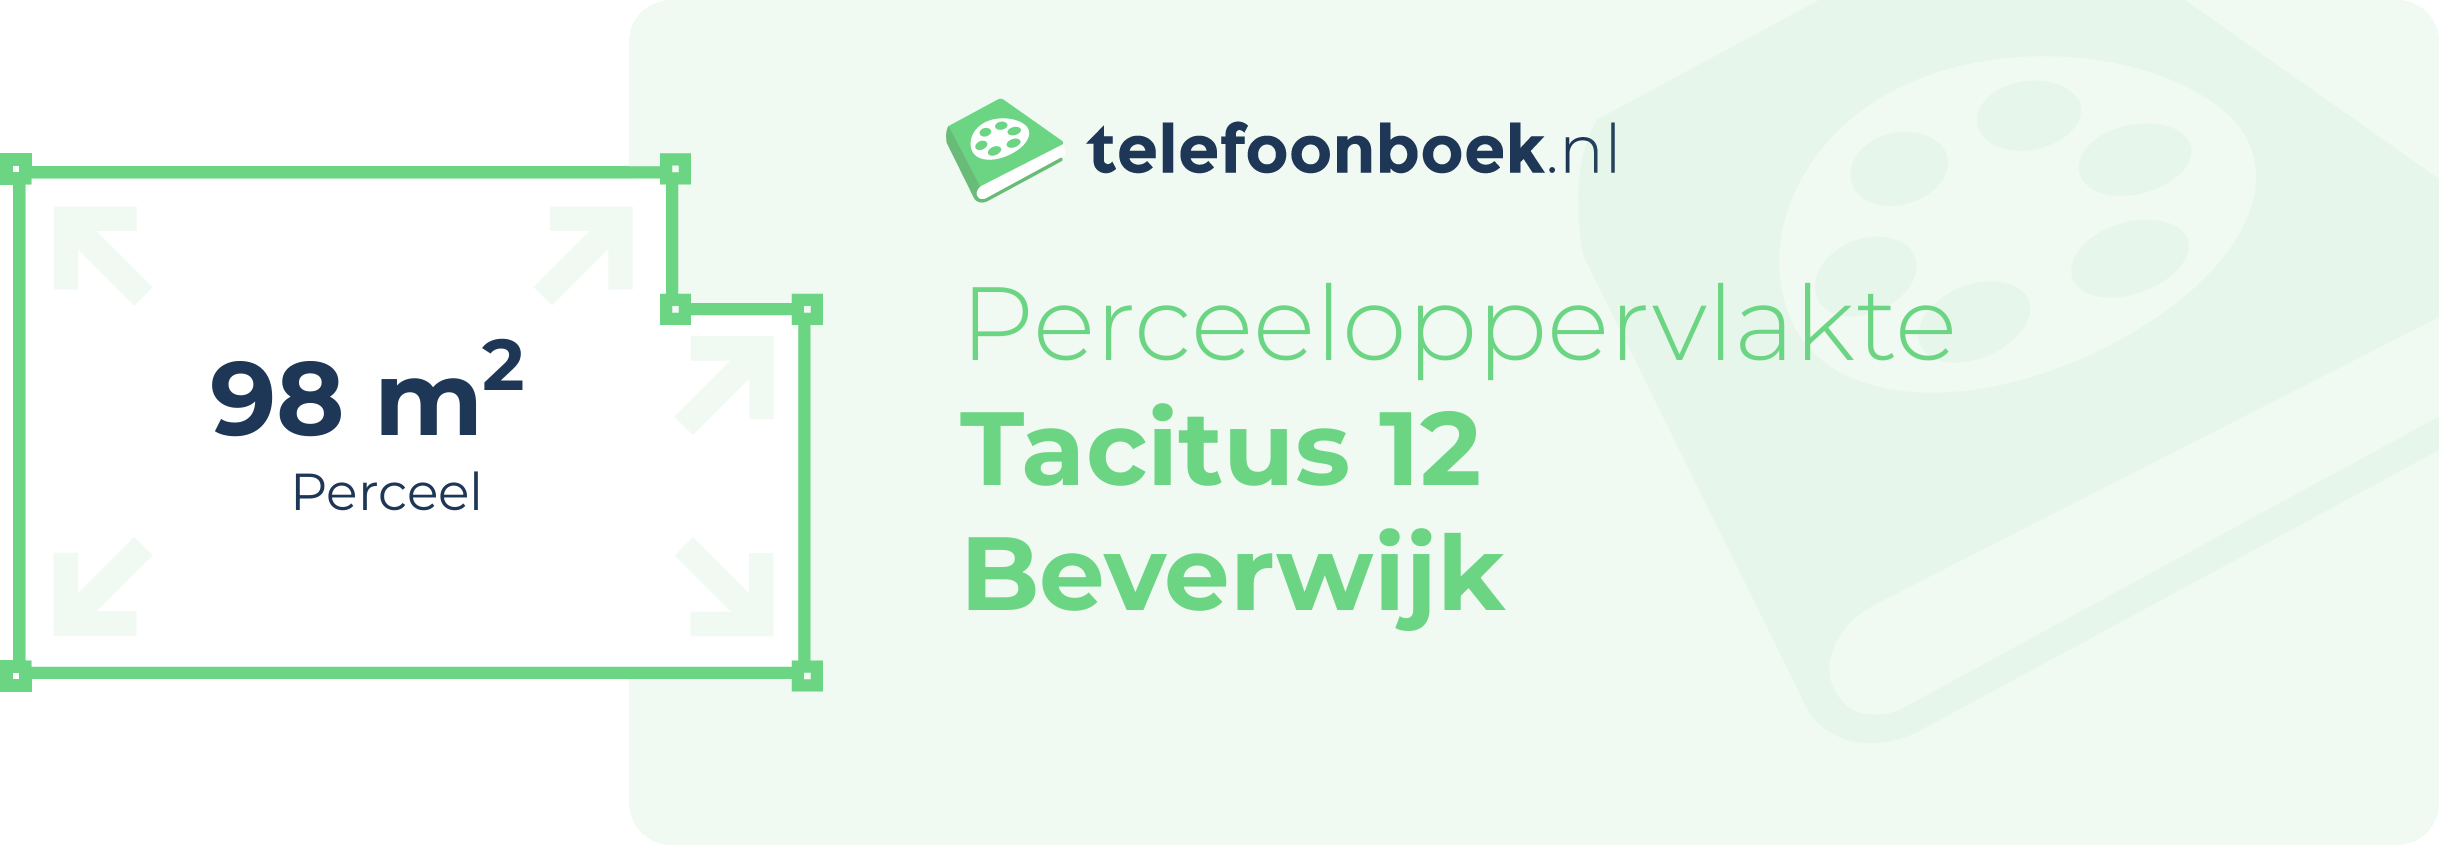 Perceeloppervlakte Tacitus 12 Beverwijk